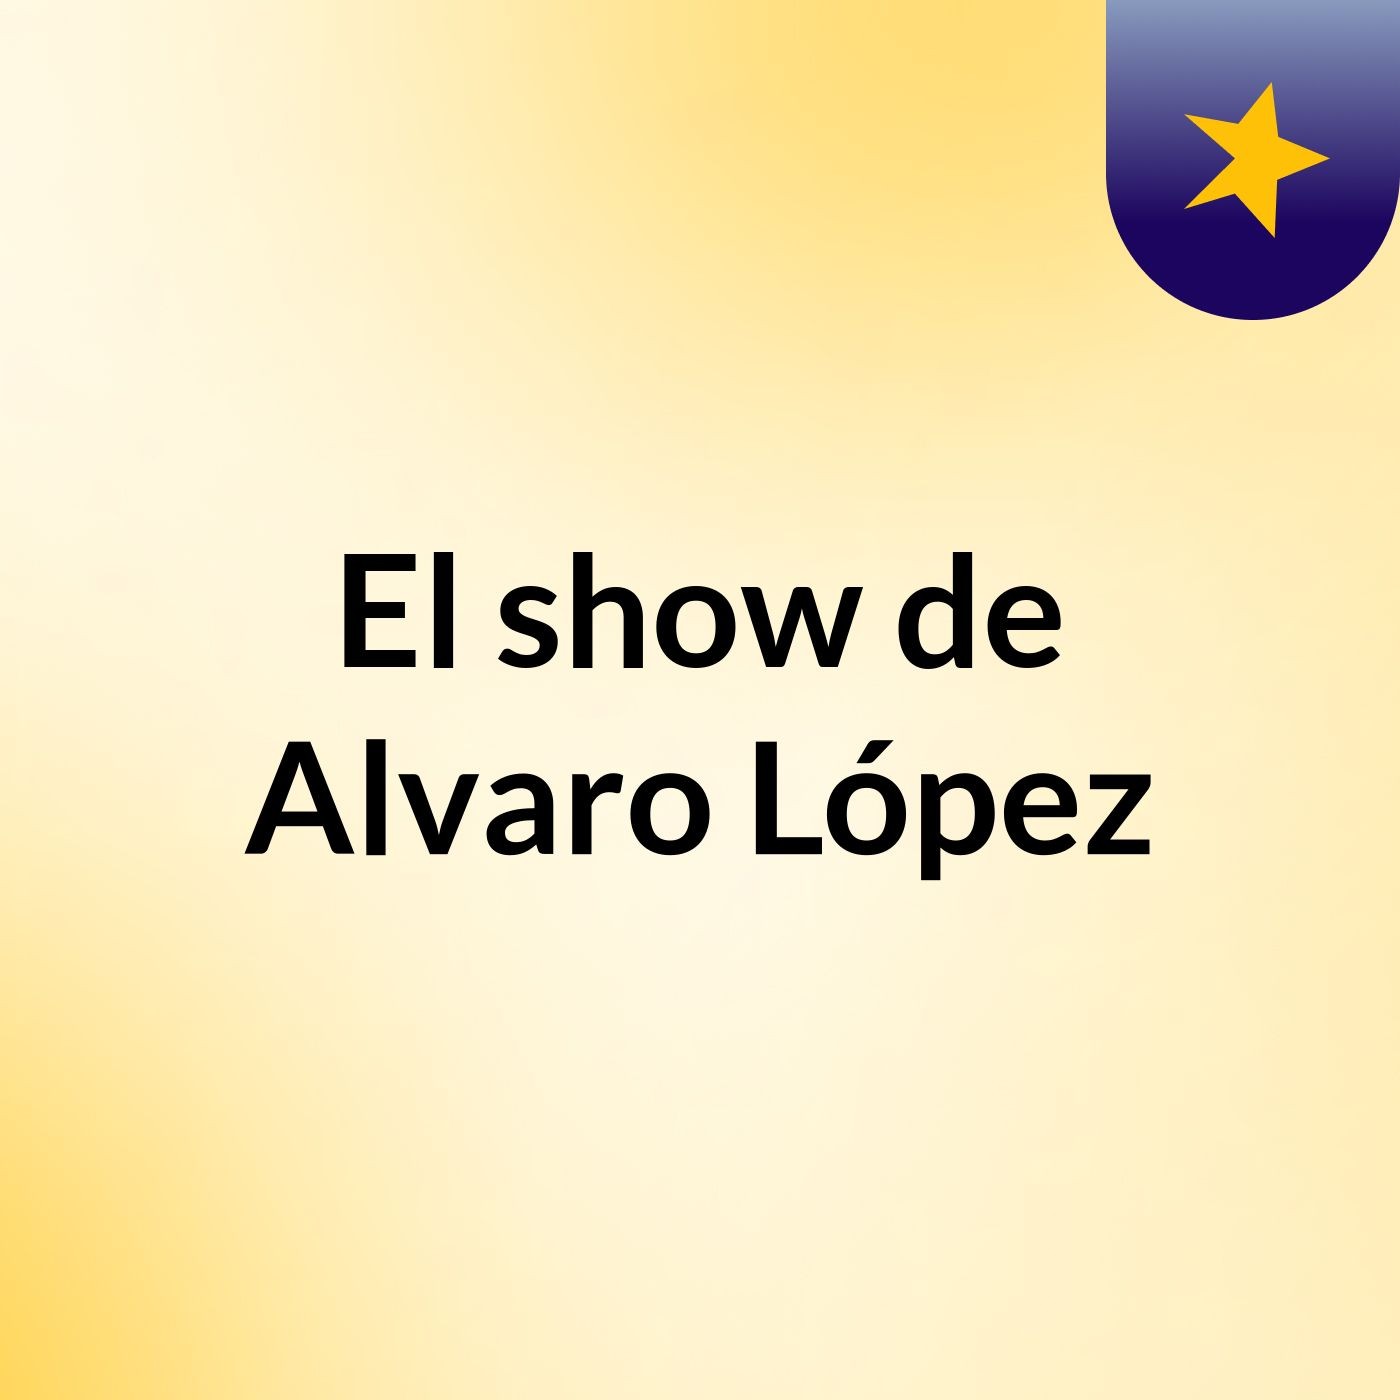 El show de Alvaro López